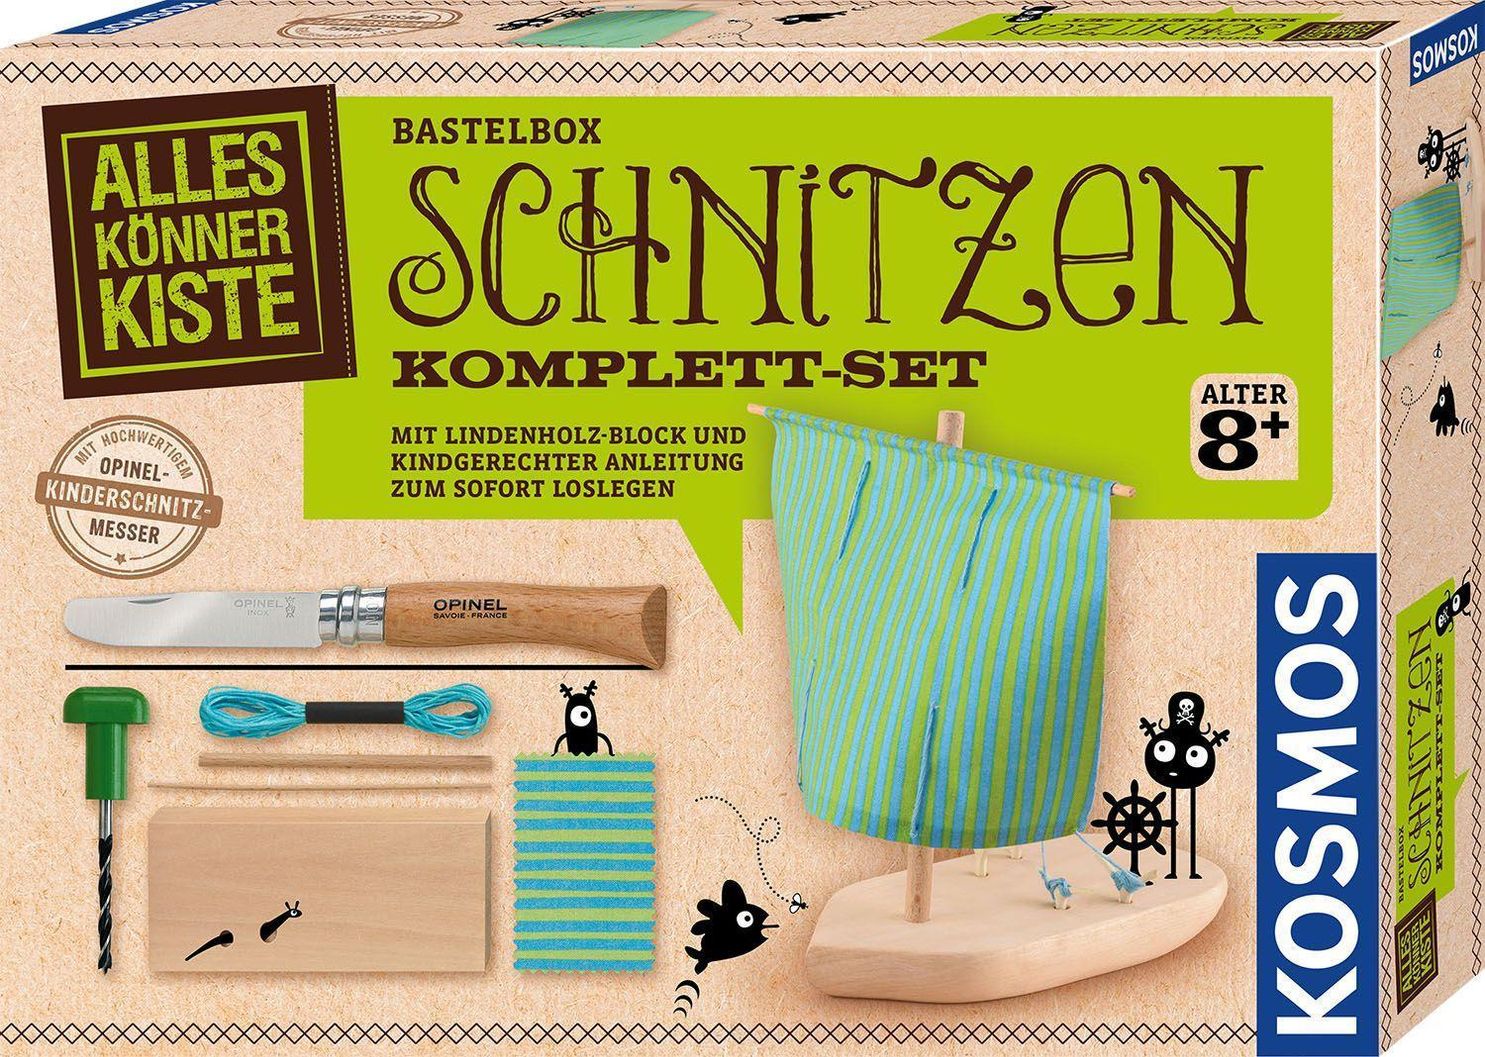 Komplett-Set SCHNITZEN mit Opinel-Kinderschnitzmesser | Weltbild.at